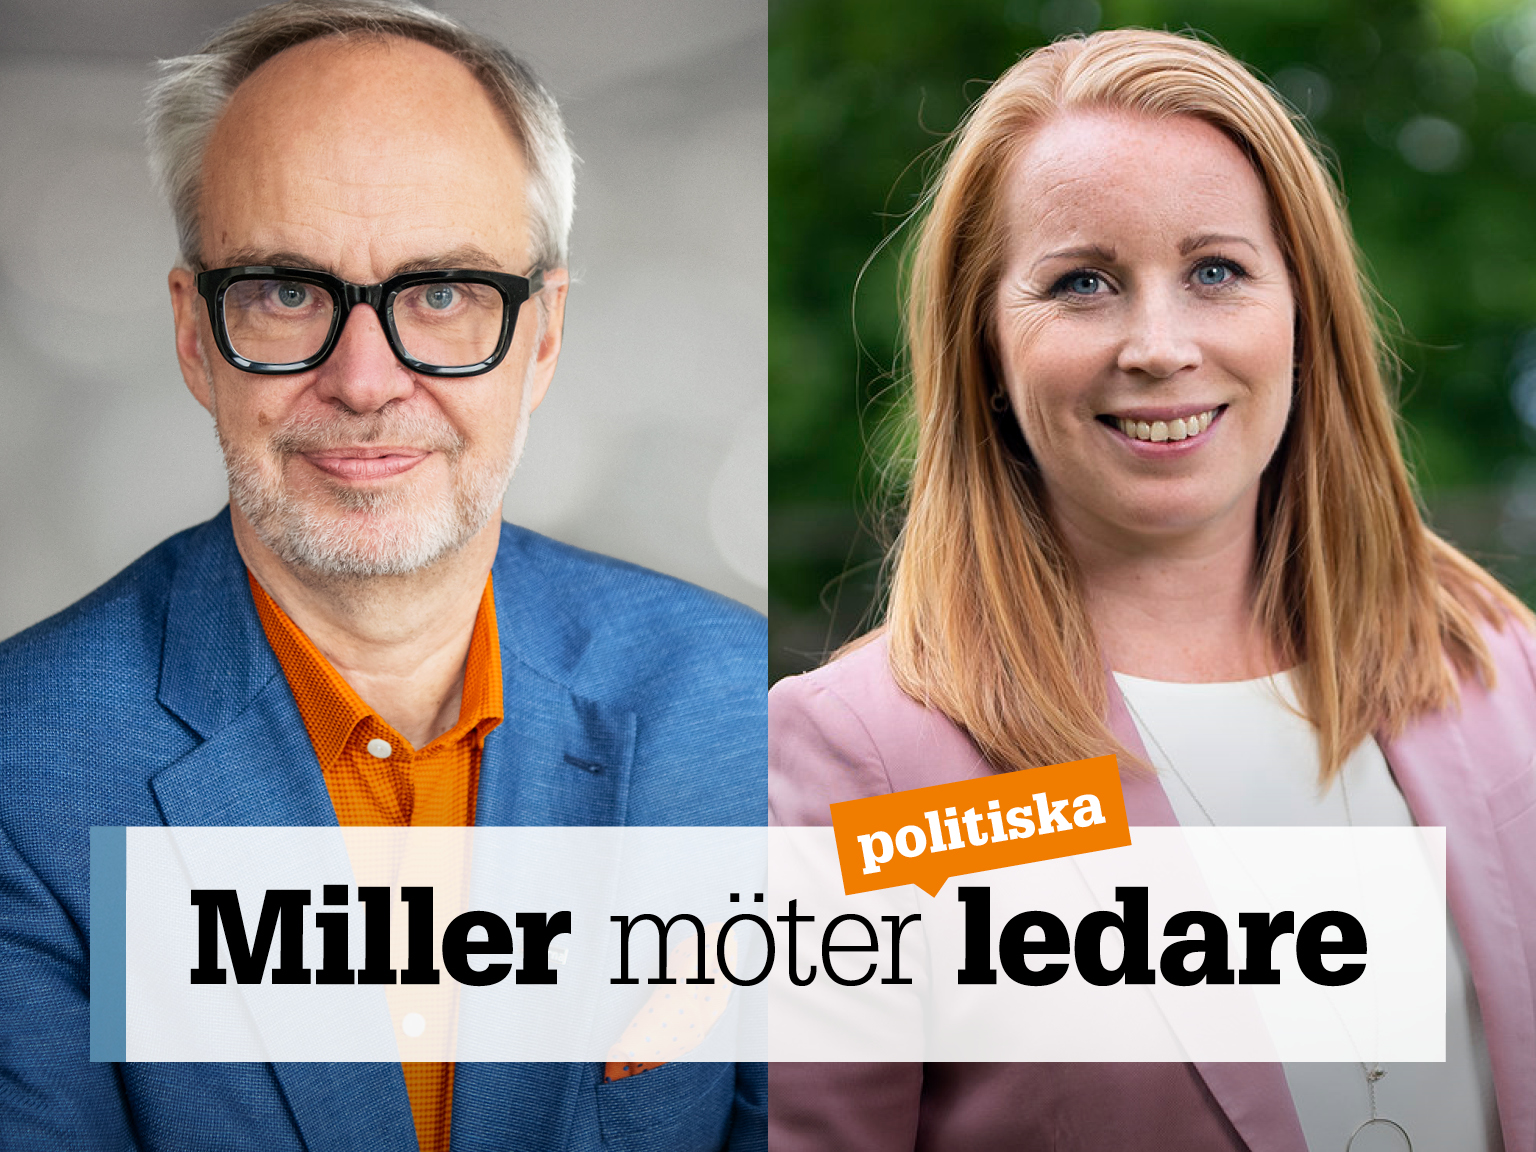 Omslag för podden Miller möter ledare – bild på Andreas Miller och Annie Lööf.